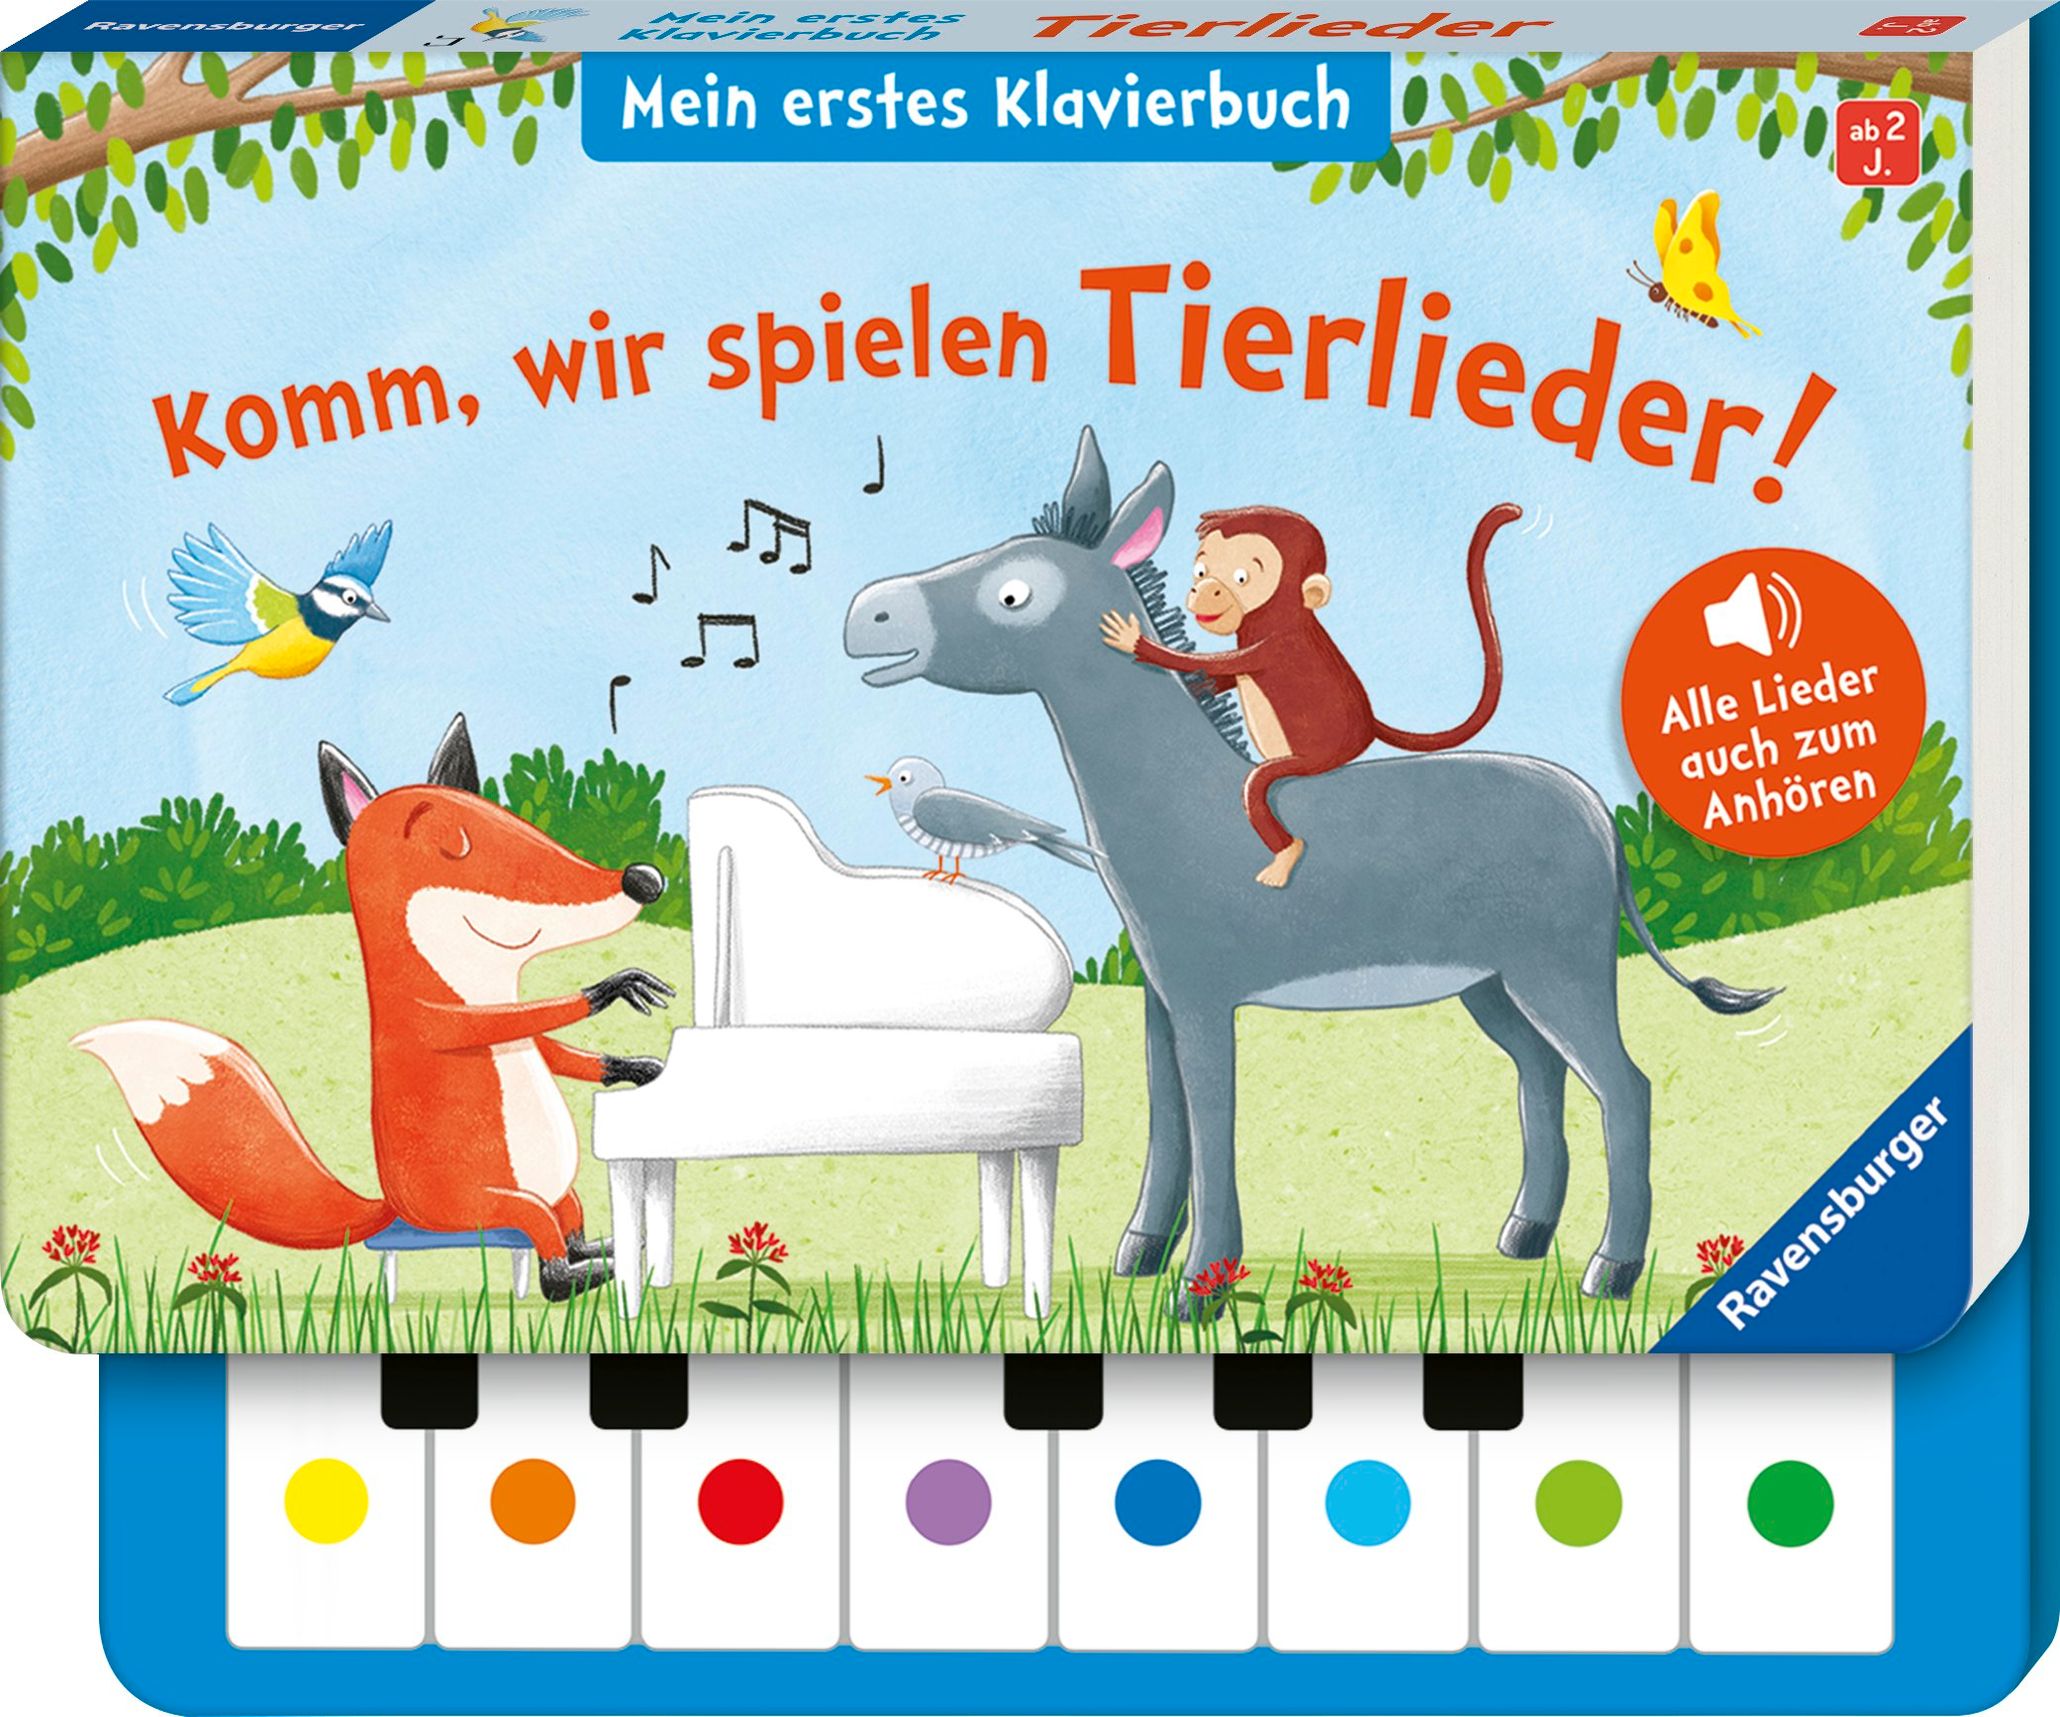 Komm, wir spielen Tierlieder! Mein erstes Klavierbuch, m. Klaviertastatur  Buch jetzt online bei Weltbild.at bestellen